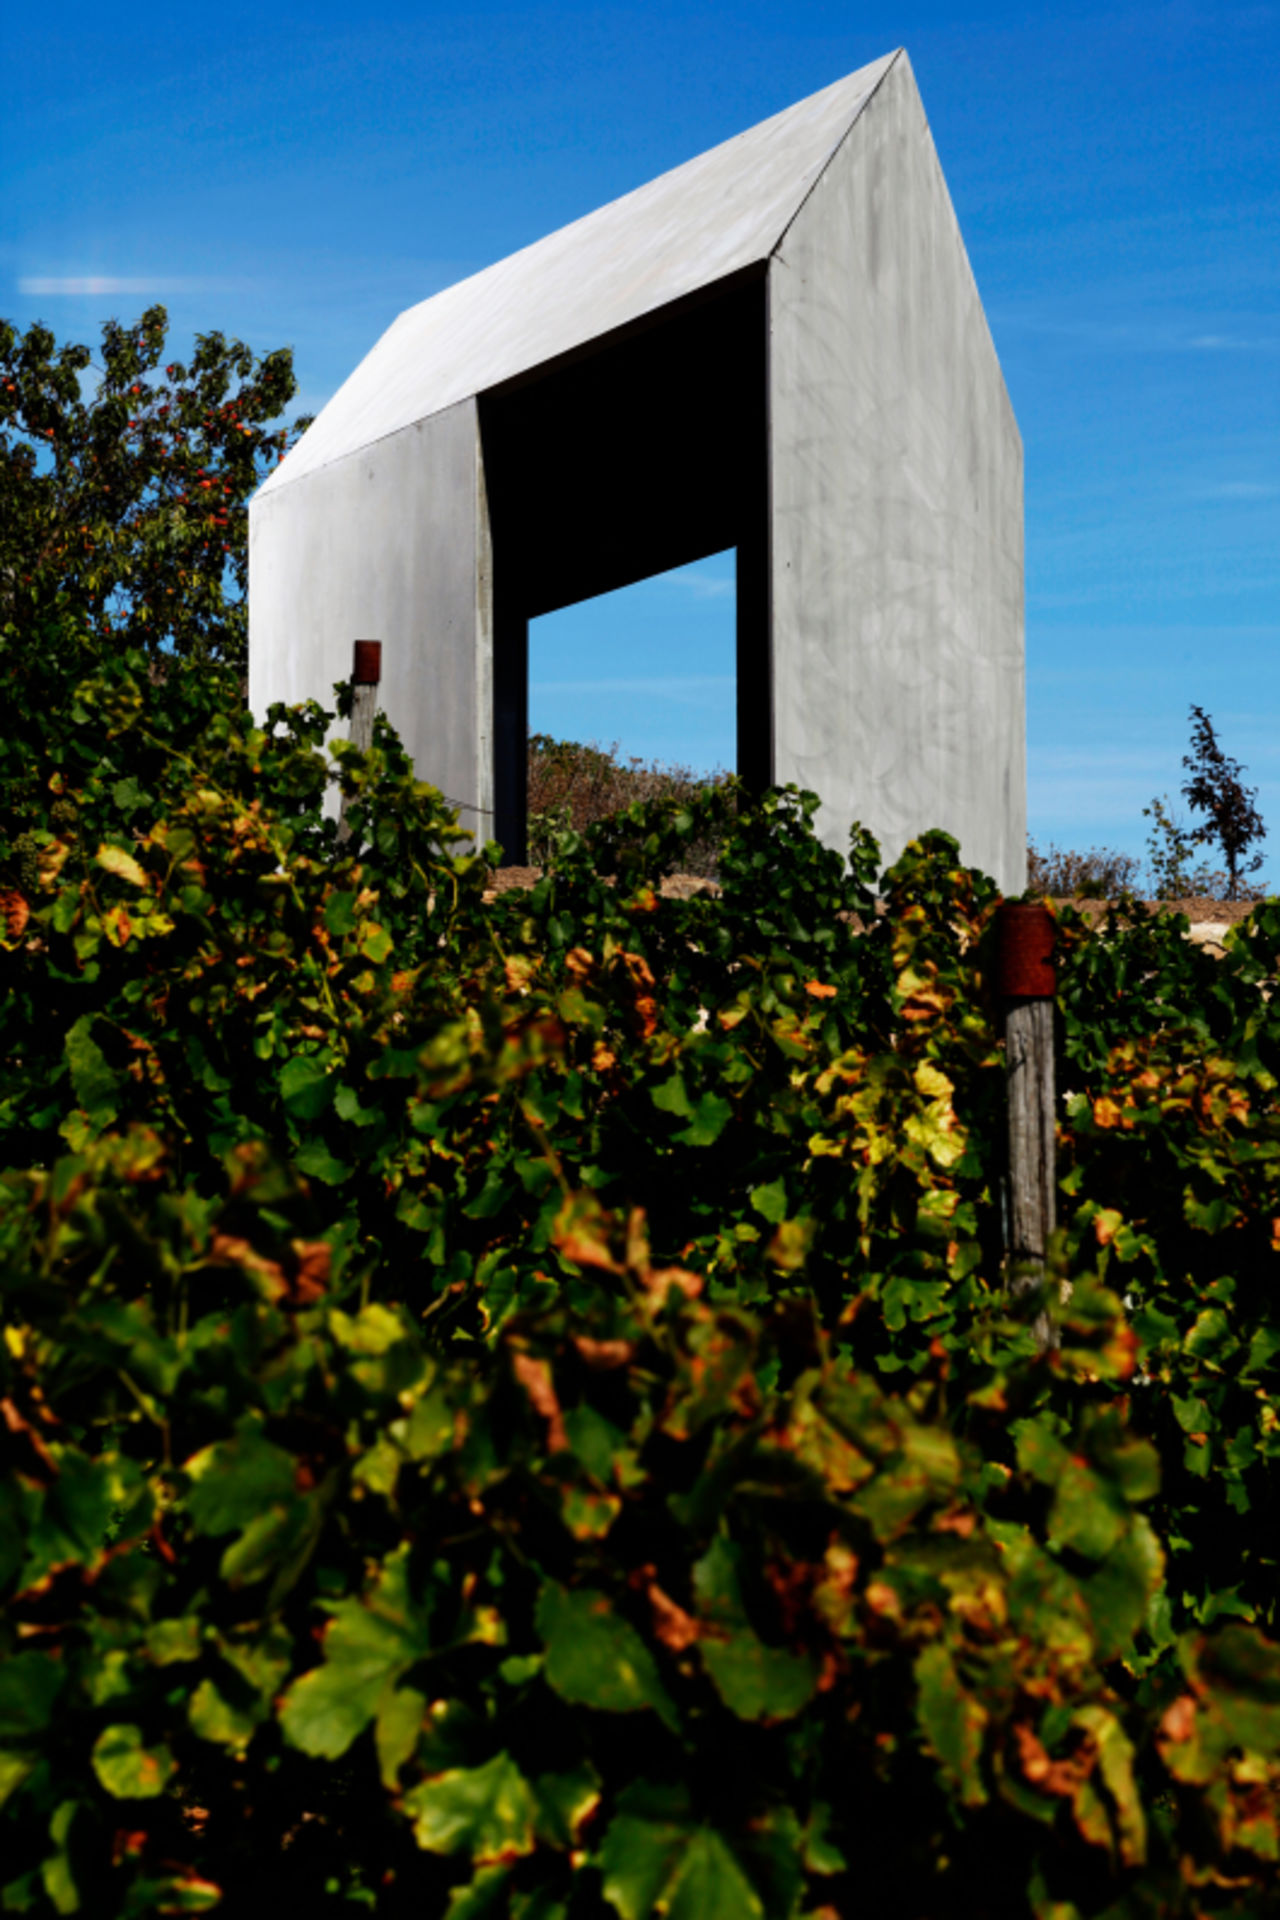 Foto: Blick auf das moderne Weinbergshaus aus Betonelementen, das sich an einem Hang zwischen Obstbäumen und Weinreben befindet.